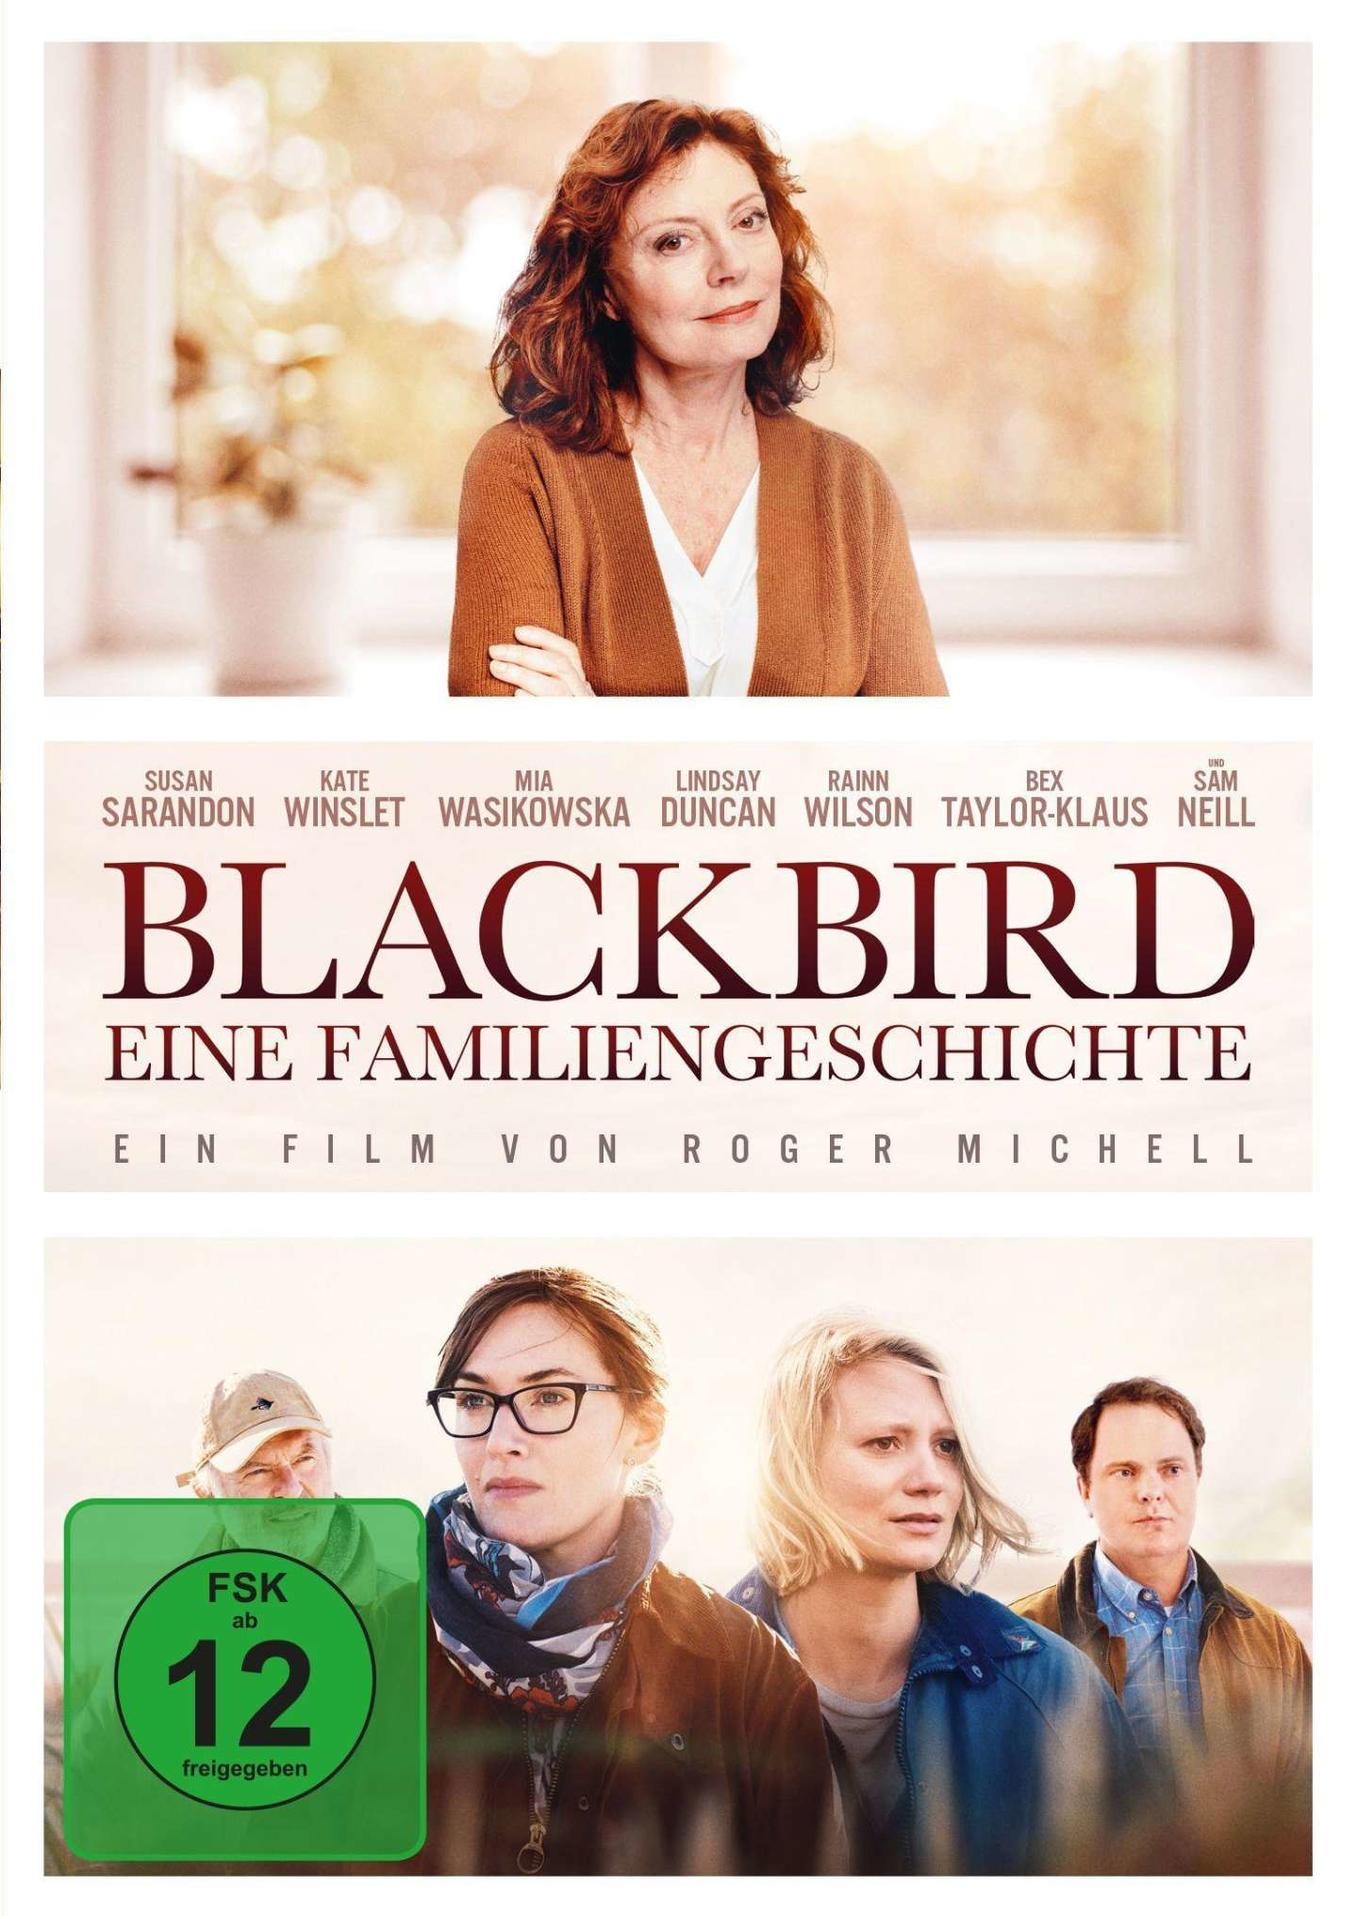 Eine - Familiengeschichte DVD Blackbird